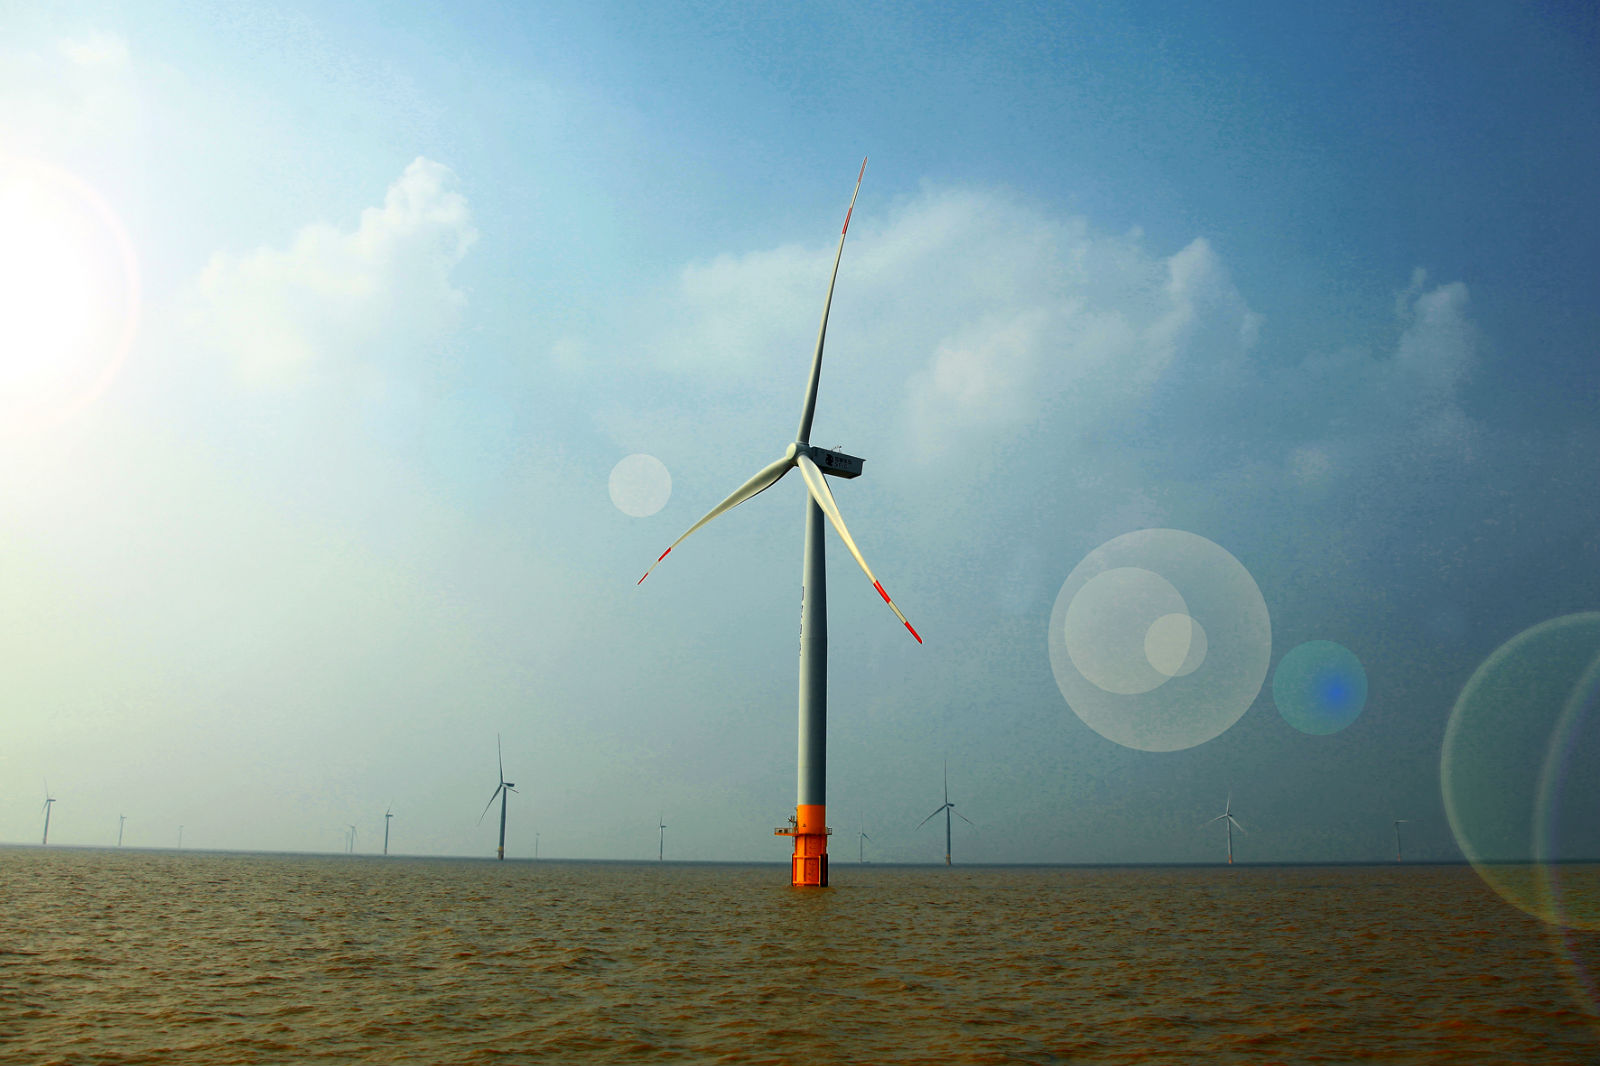 上百架大风车在浩瀚海面依次排开,江苏滨海港将建成亚洲最大海上风